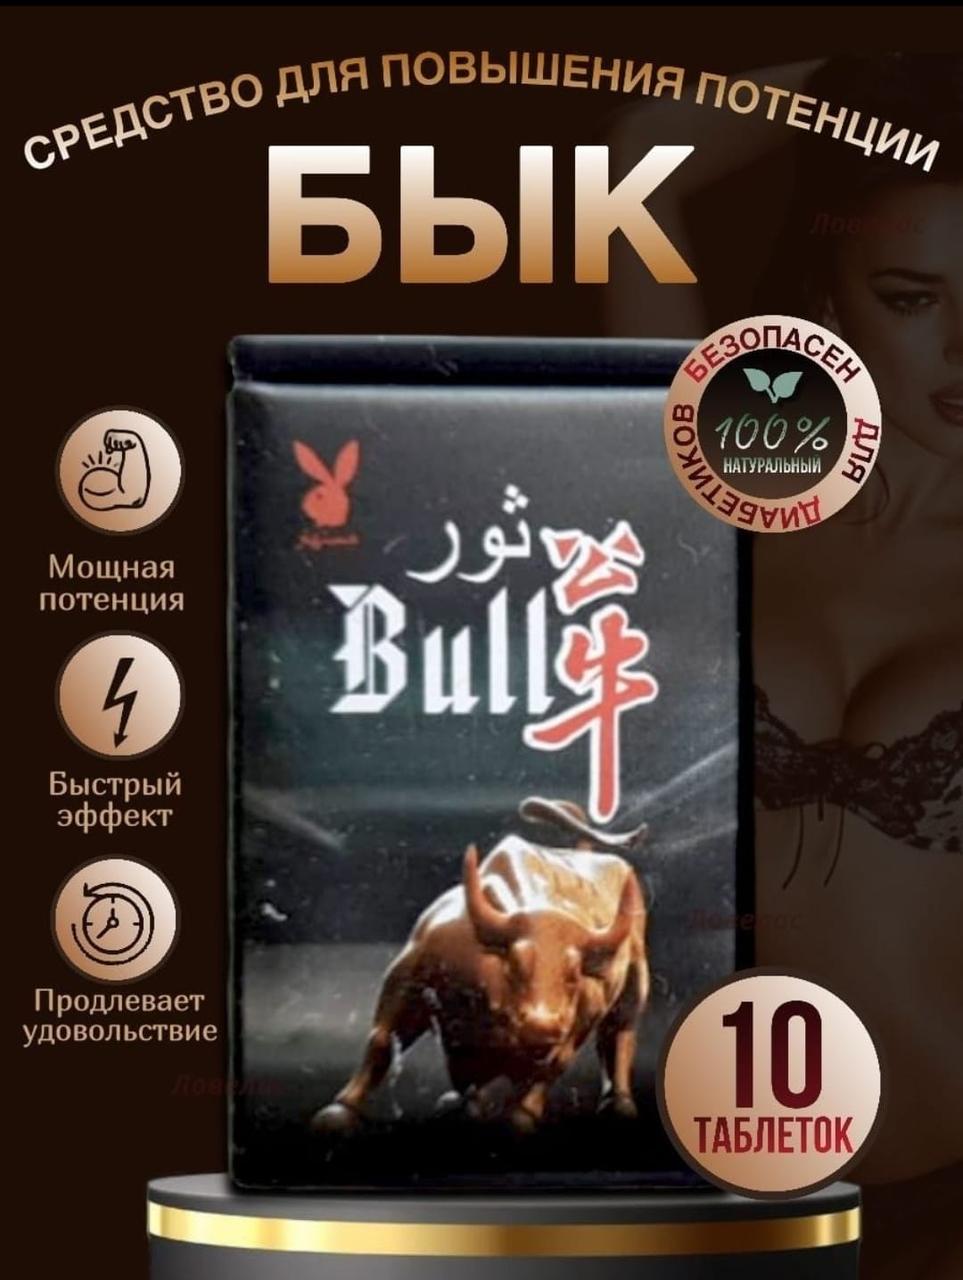 Таблетки для потенции "Bull' (Бык), фото 1